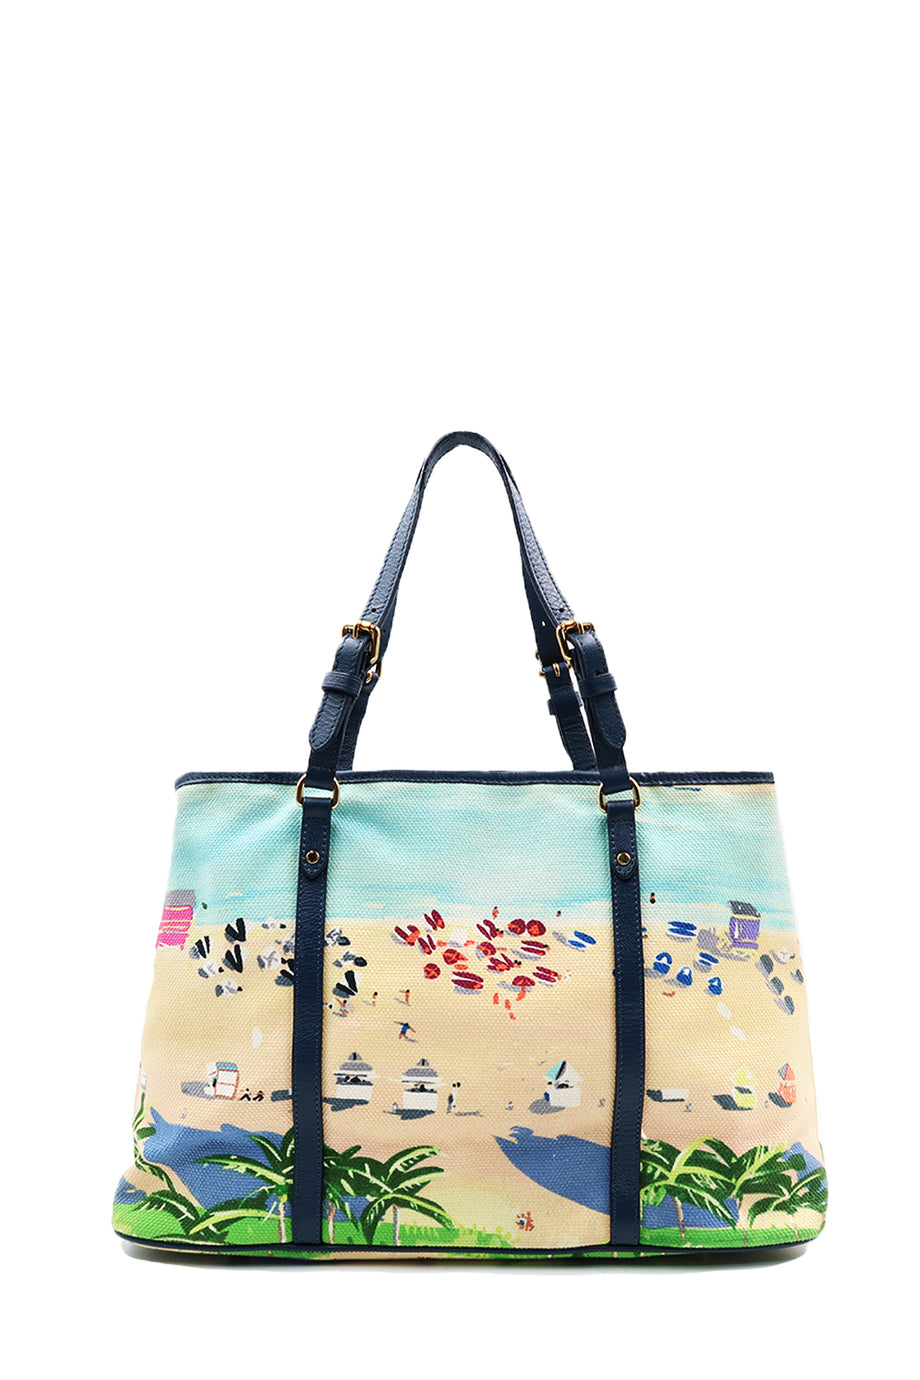 Louis Vuitton, Bags, Auth Louis Vuitton Limited Canvas Tote Bag Ailleurs  Escale Cabas Gm